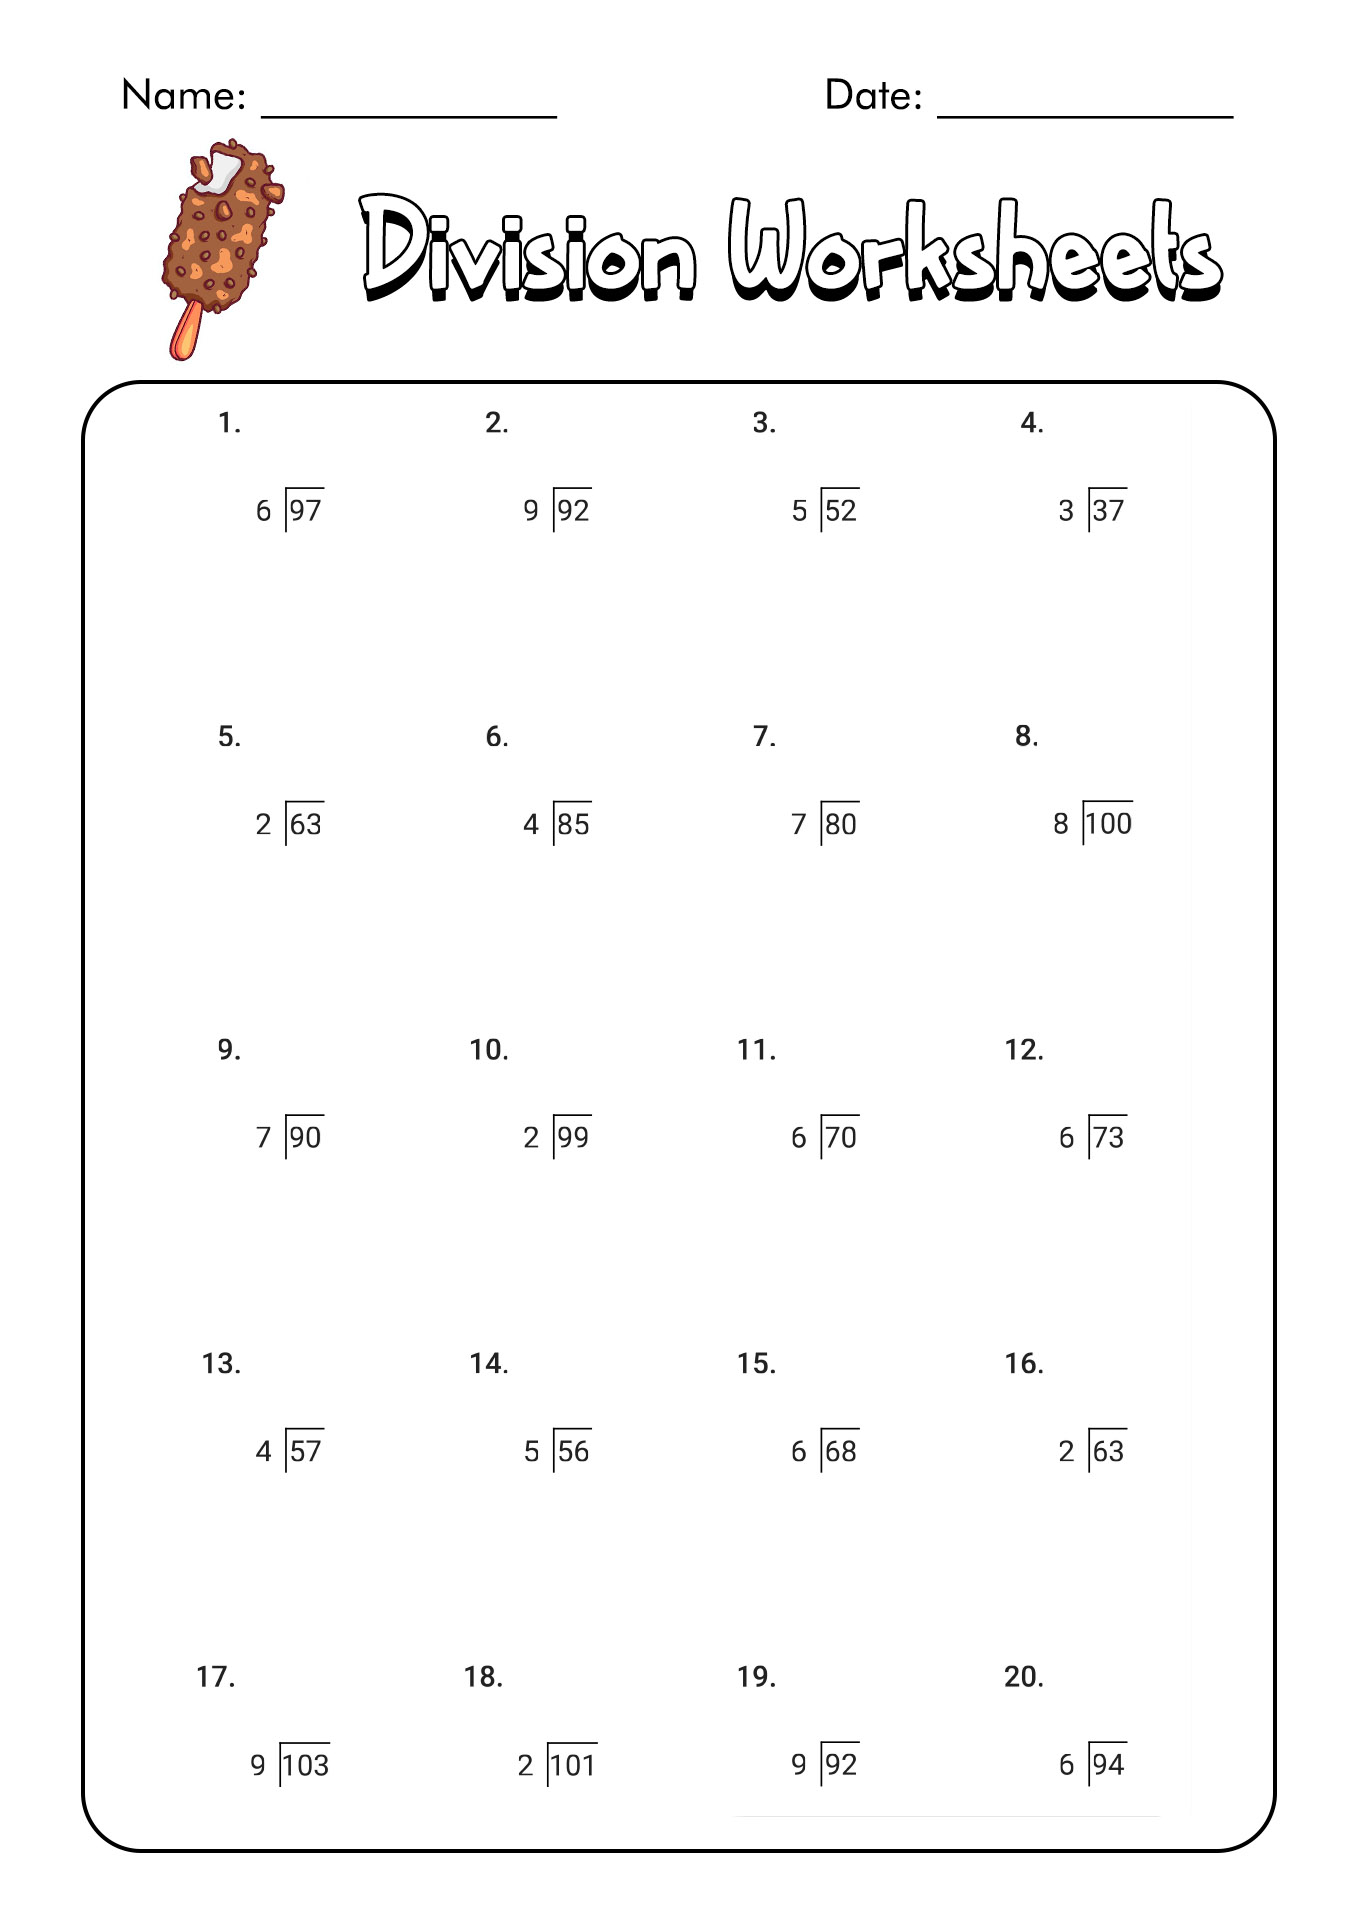 multiplication-and-division-worksheets-3rd-grade-thekidsworksheet